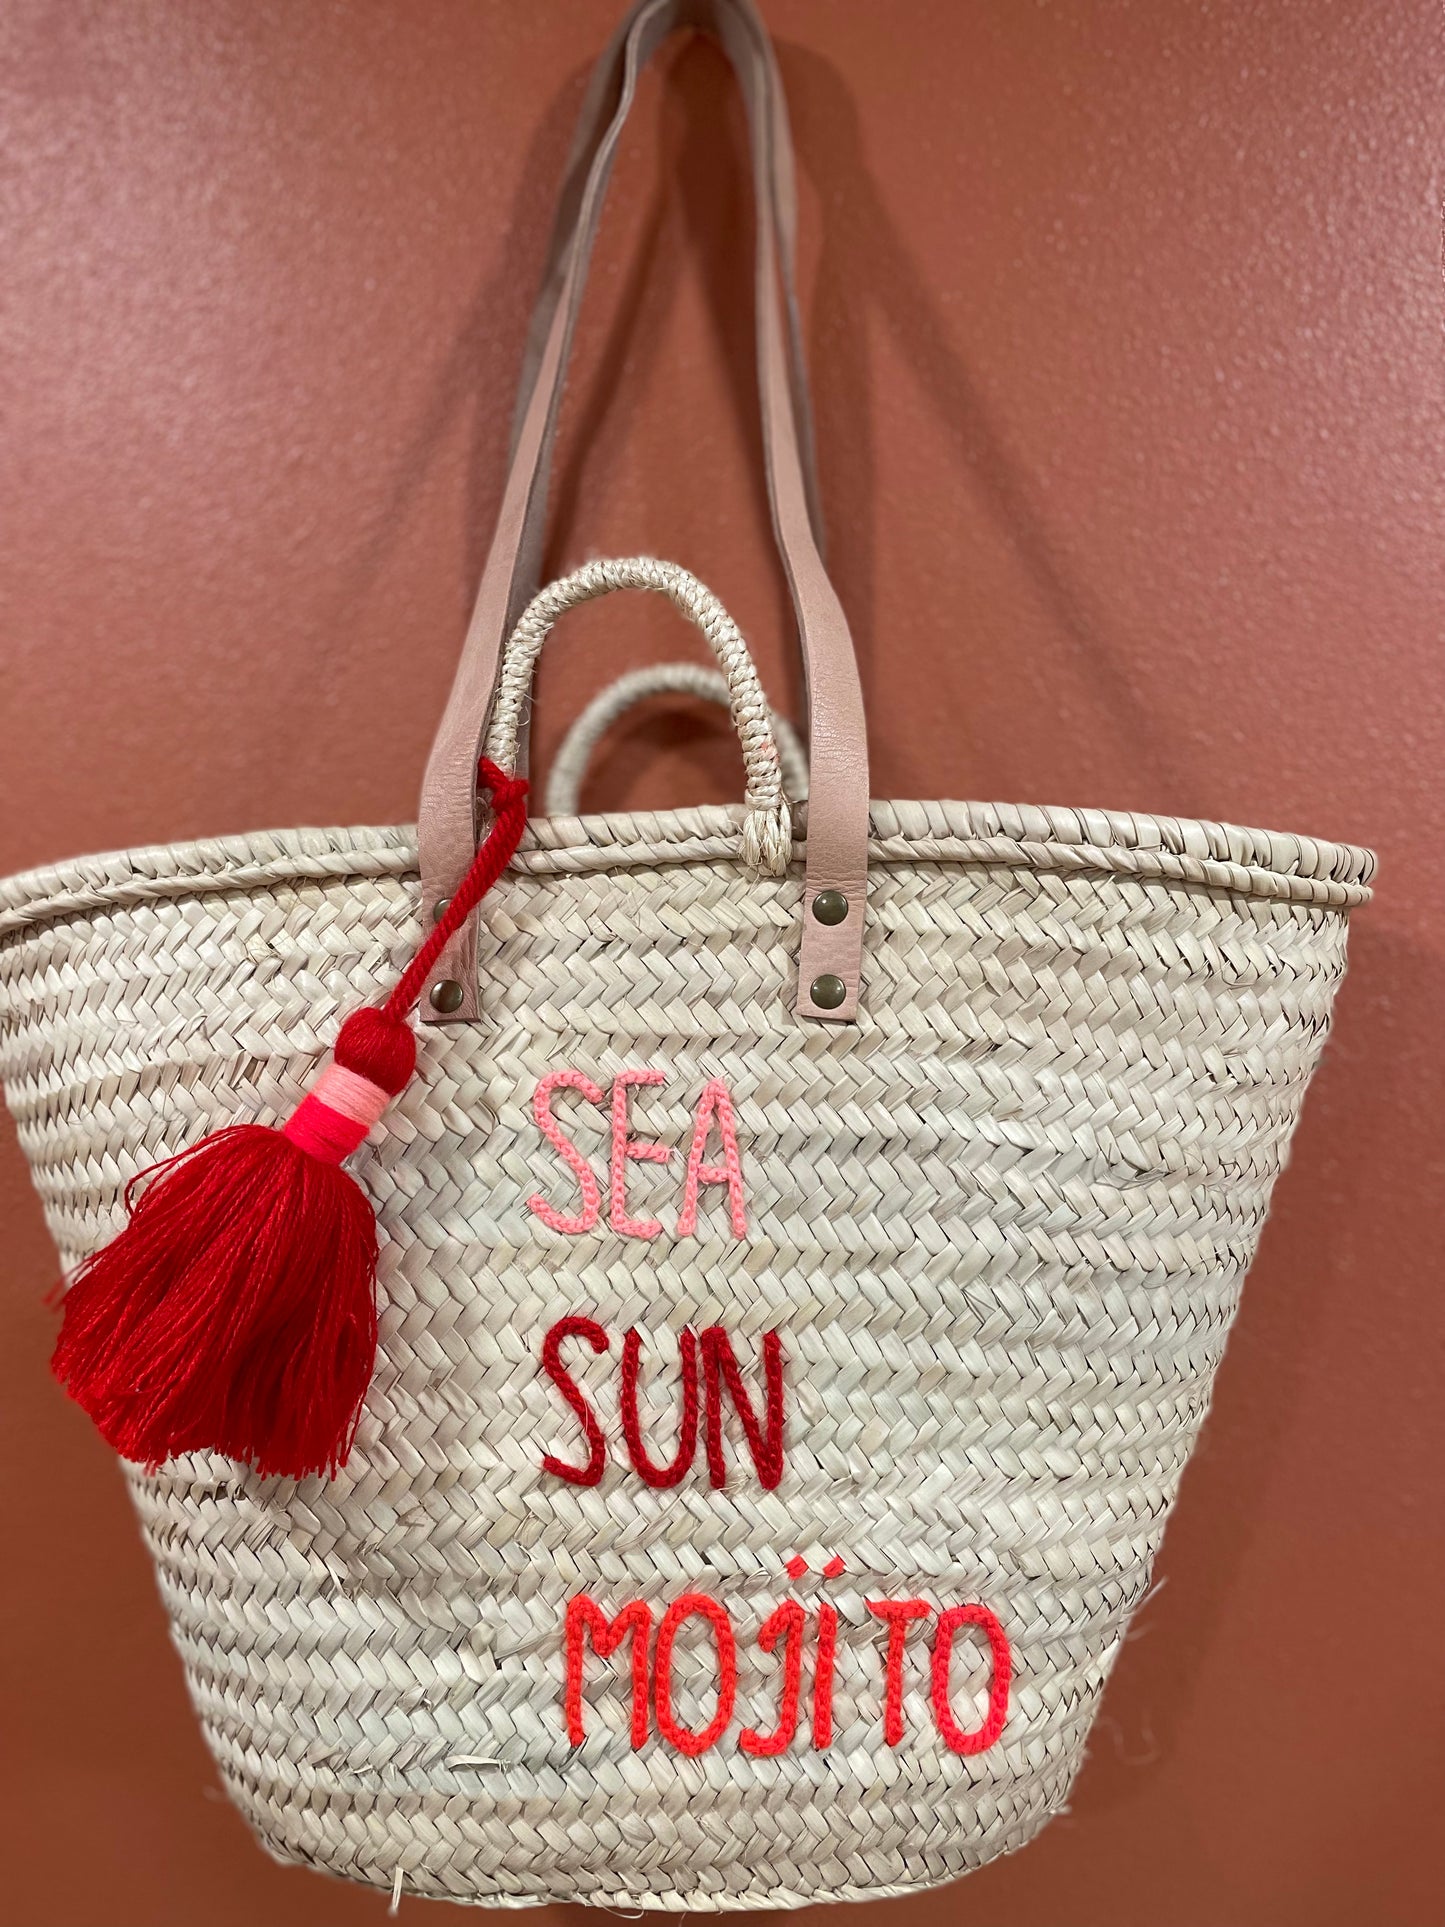 Moroccan Basket Bag "SEA, SUN, MOJITO" Corail